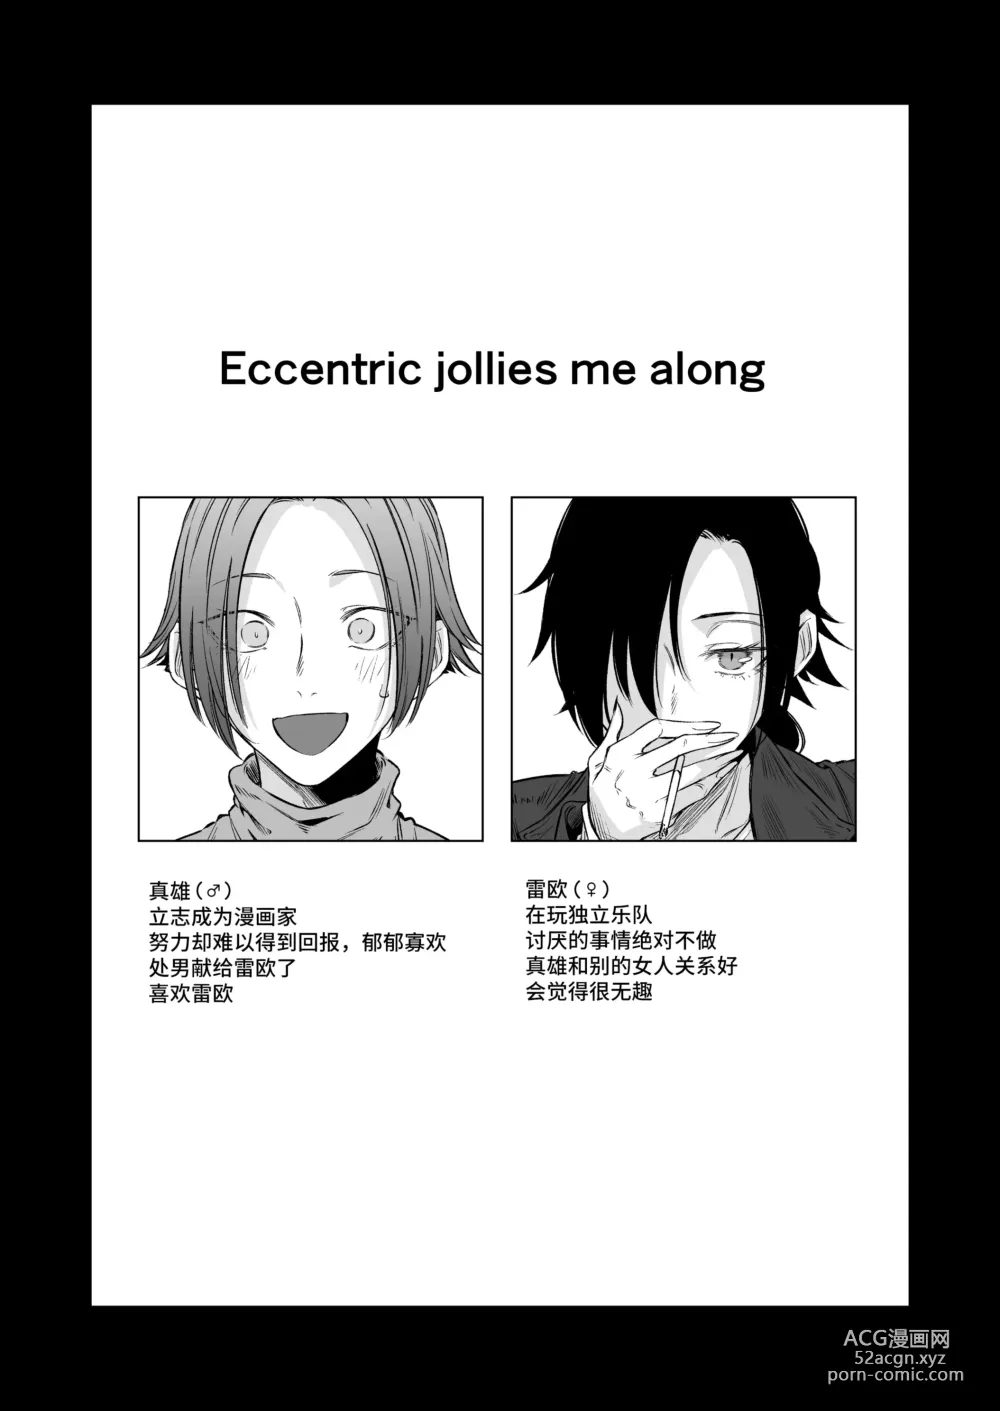 Page 3 of doujinshi Eccentric jollies me along